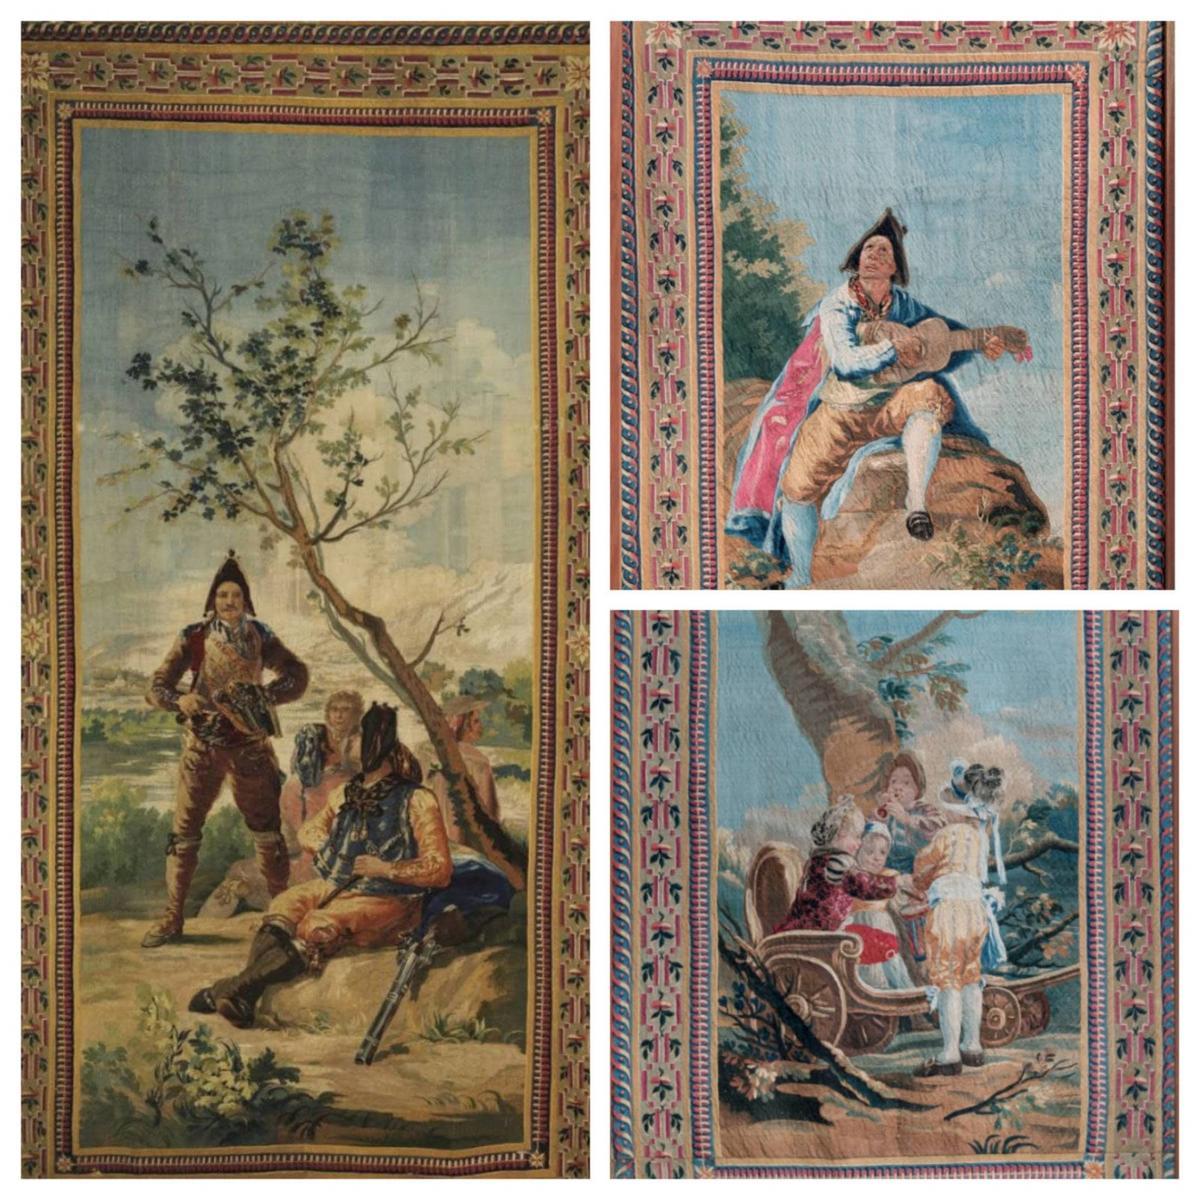 'El resguardo de Tabacos',  'El Majo de la Guitarra' y 'Los niños del Carretón' son tres de los tapices de Goya que se conservan en el Museo de la Catedral